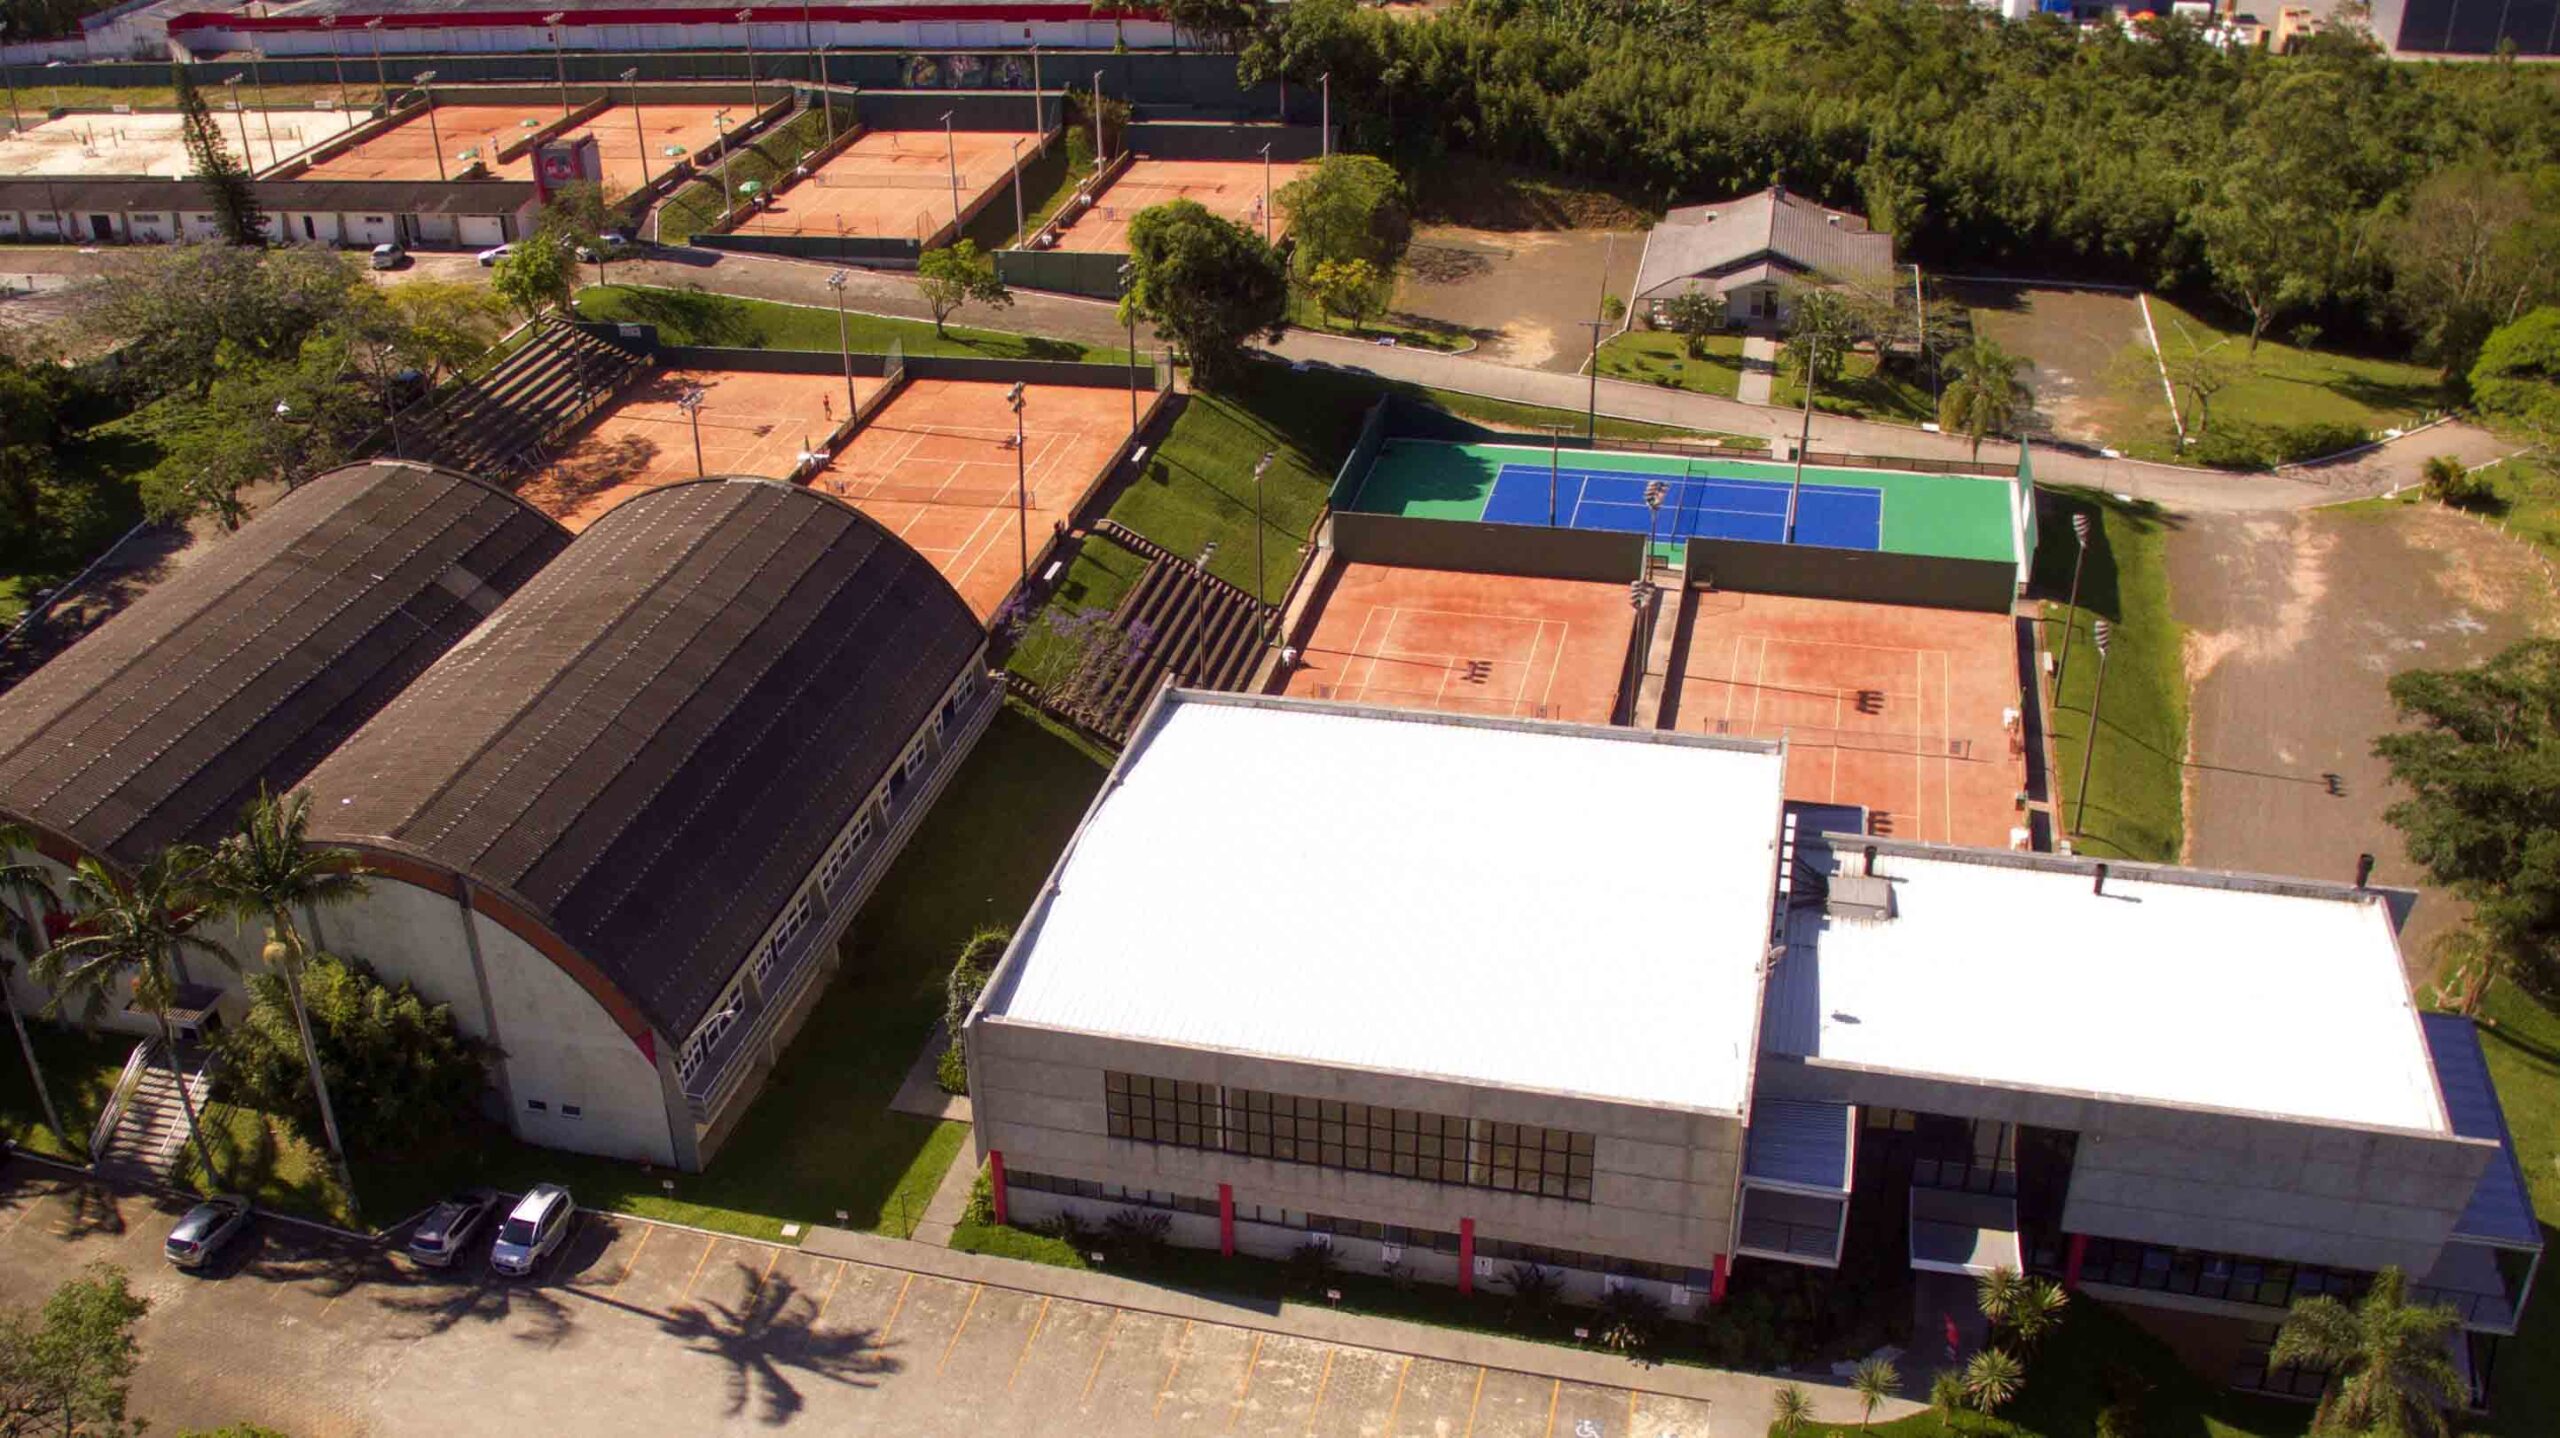 Santa Catarina receberá torneios internacionais de tênis em 2021, tênis